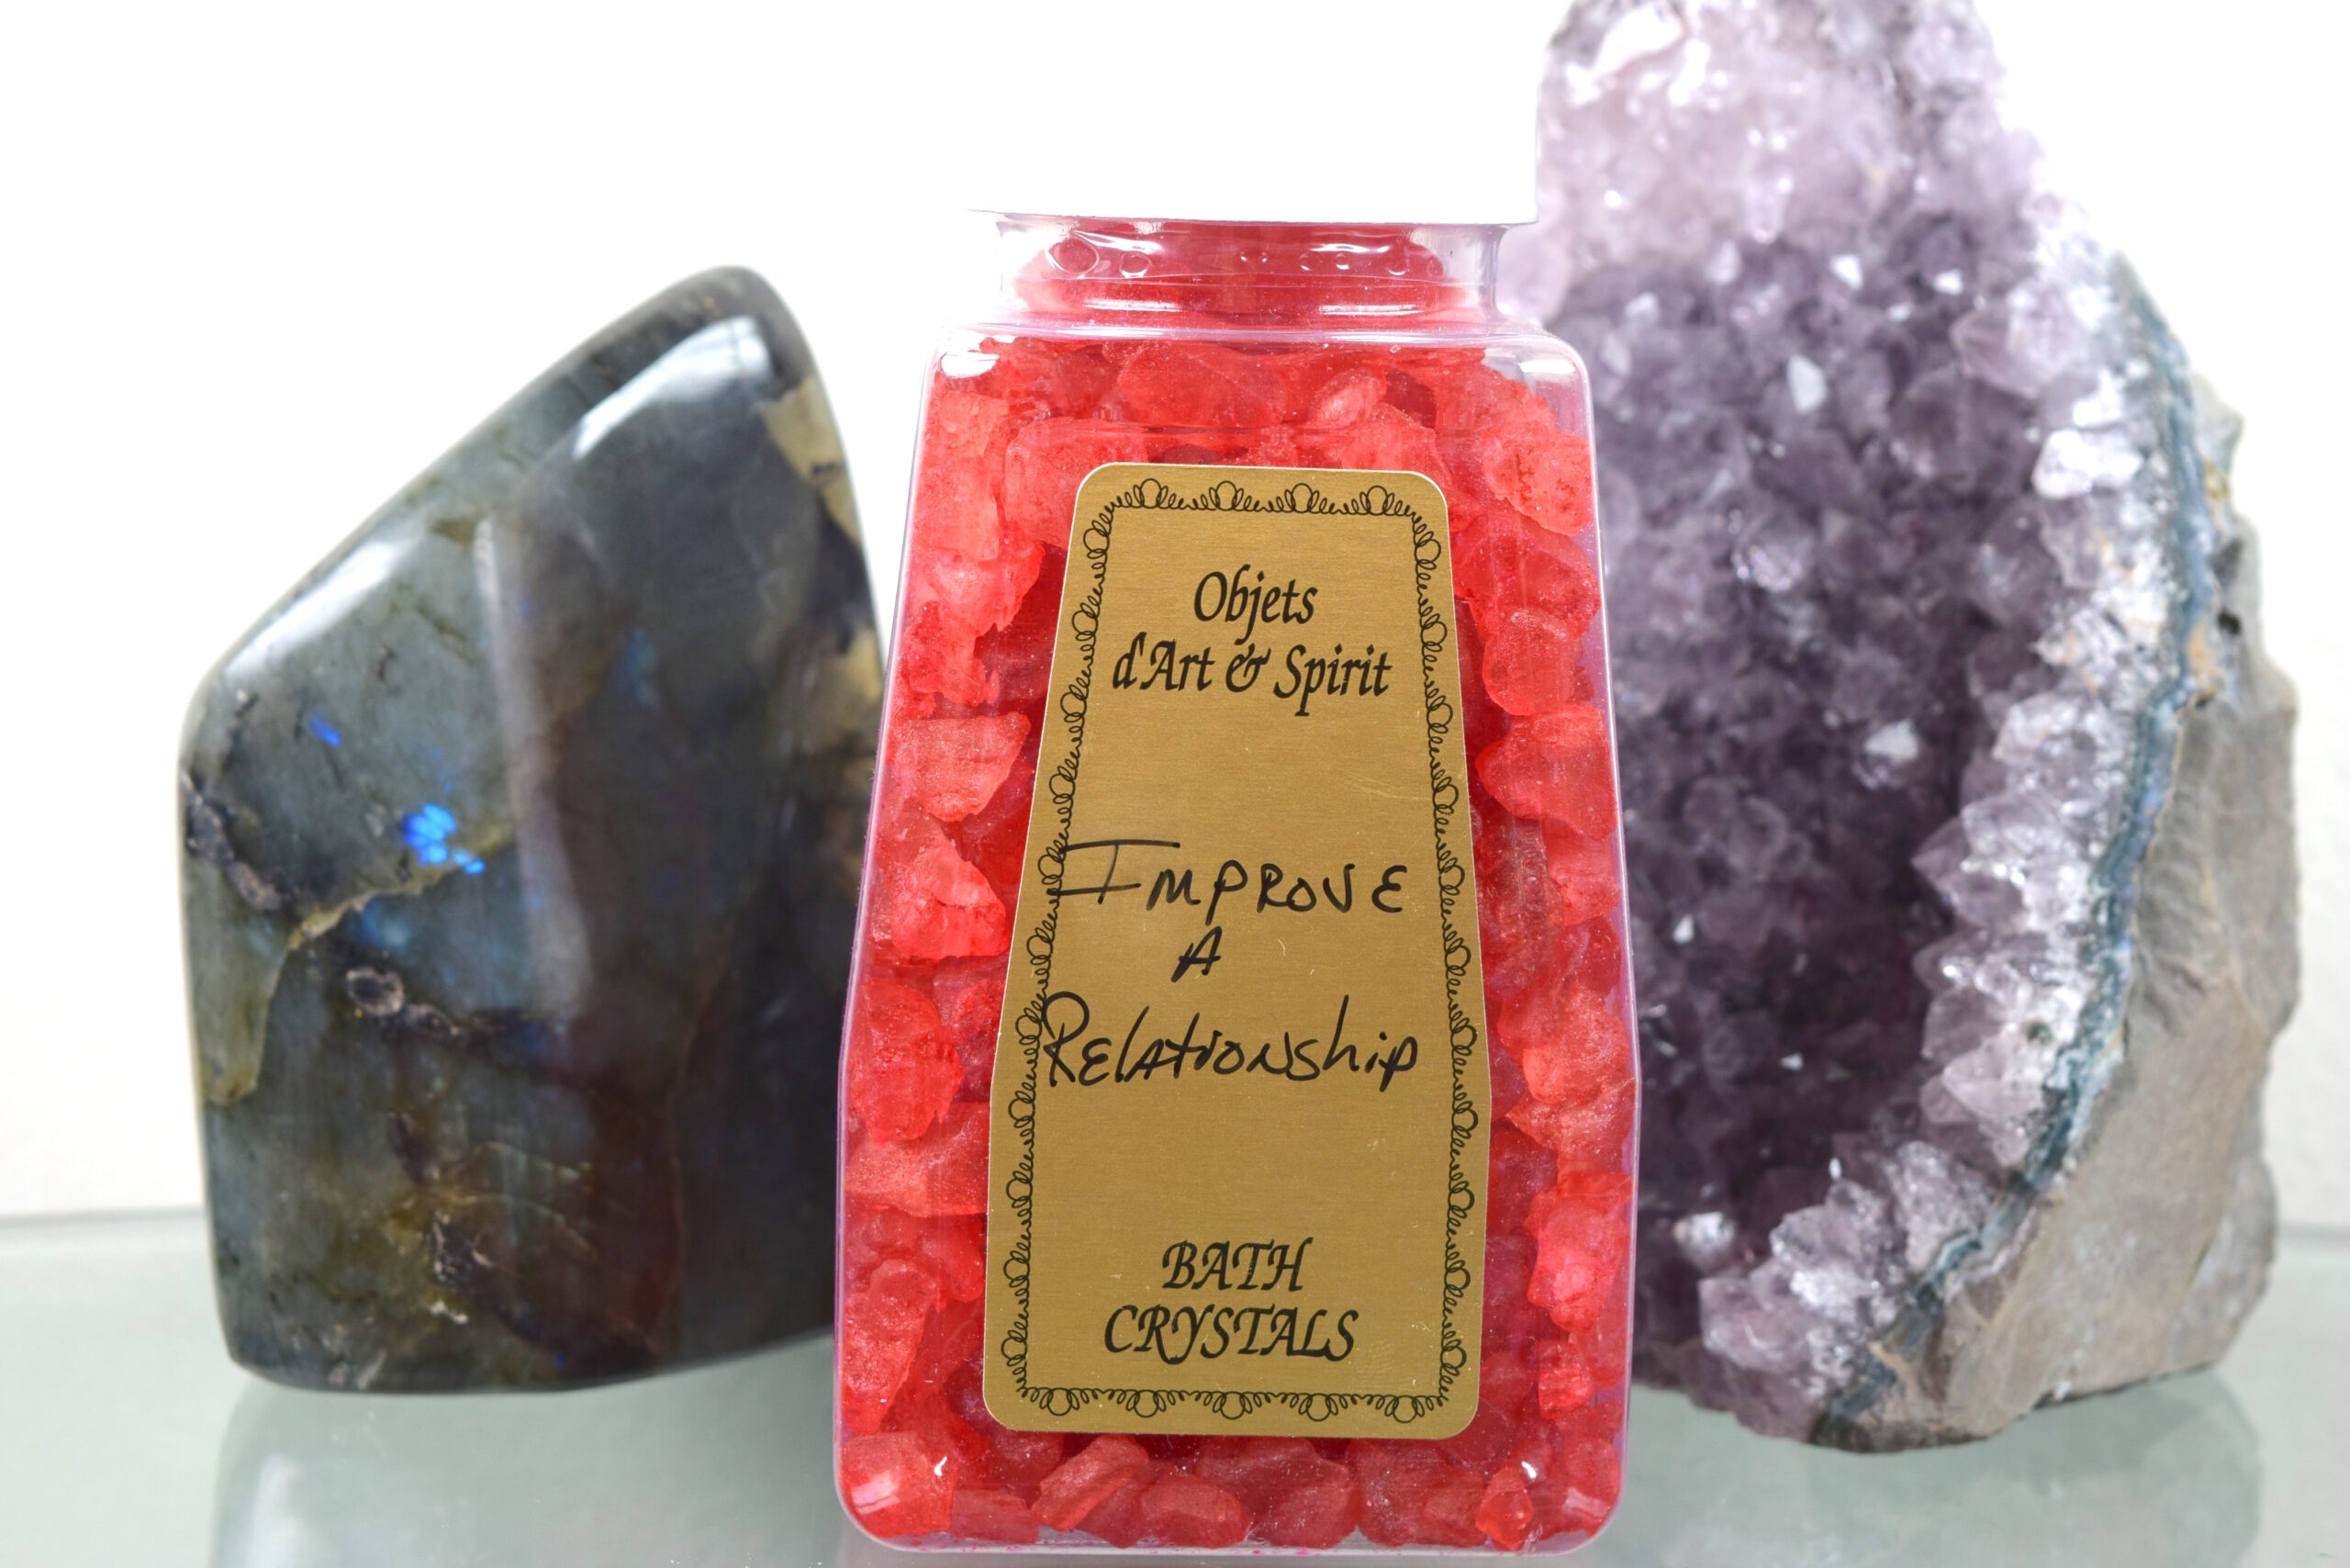 Improve A Relationship Bath Salt Crystals